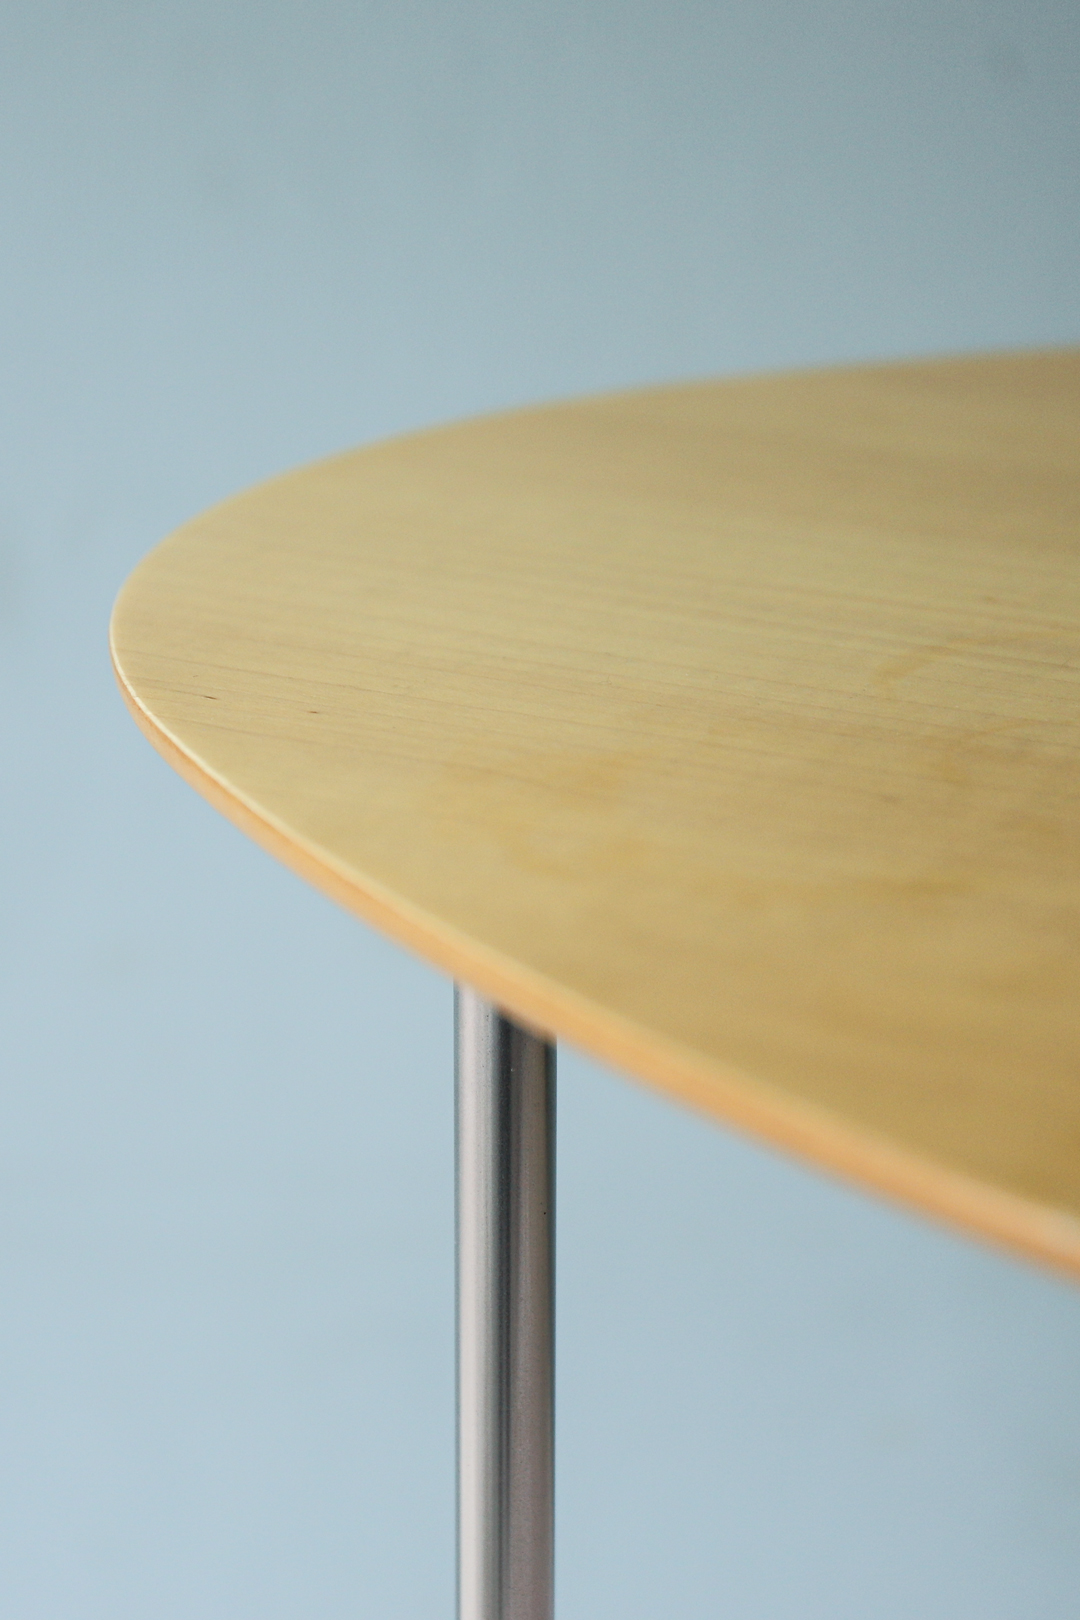 STUA ECLIPSE Side Table Made in Spain/ストゥア エクリプス サイドテーブル スペイン製 シンプル モダンデザイン